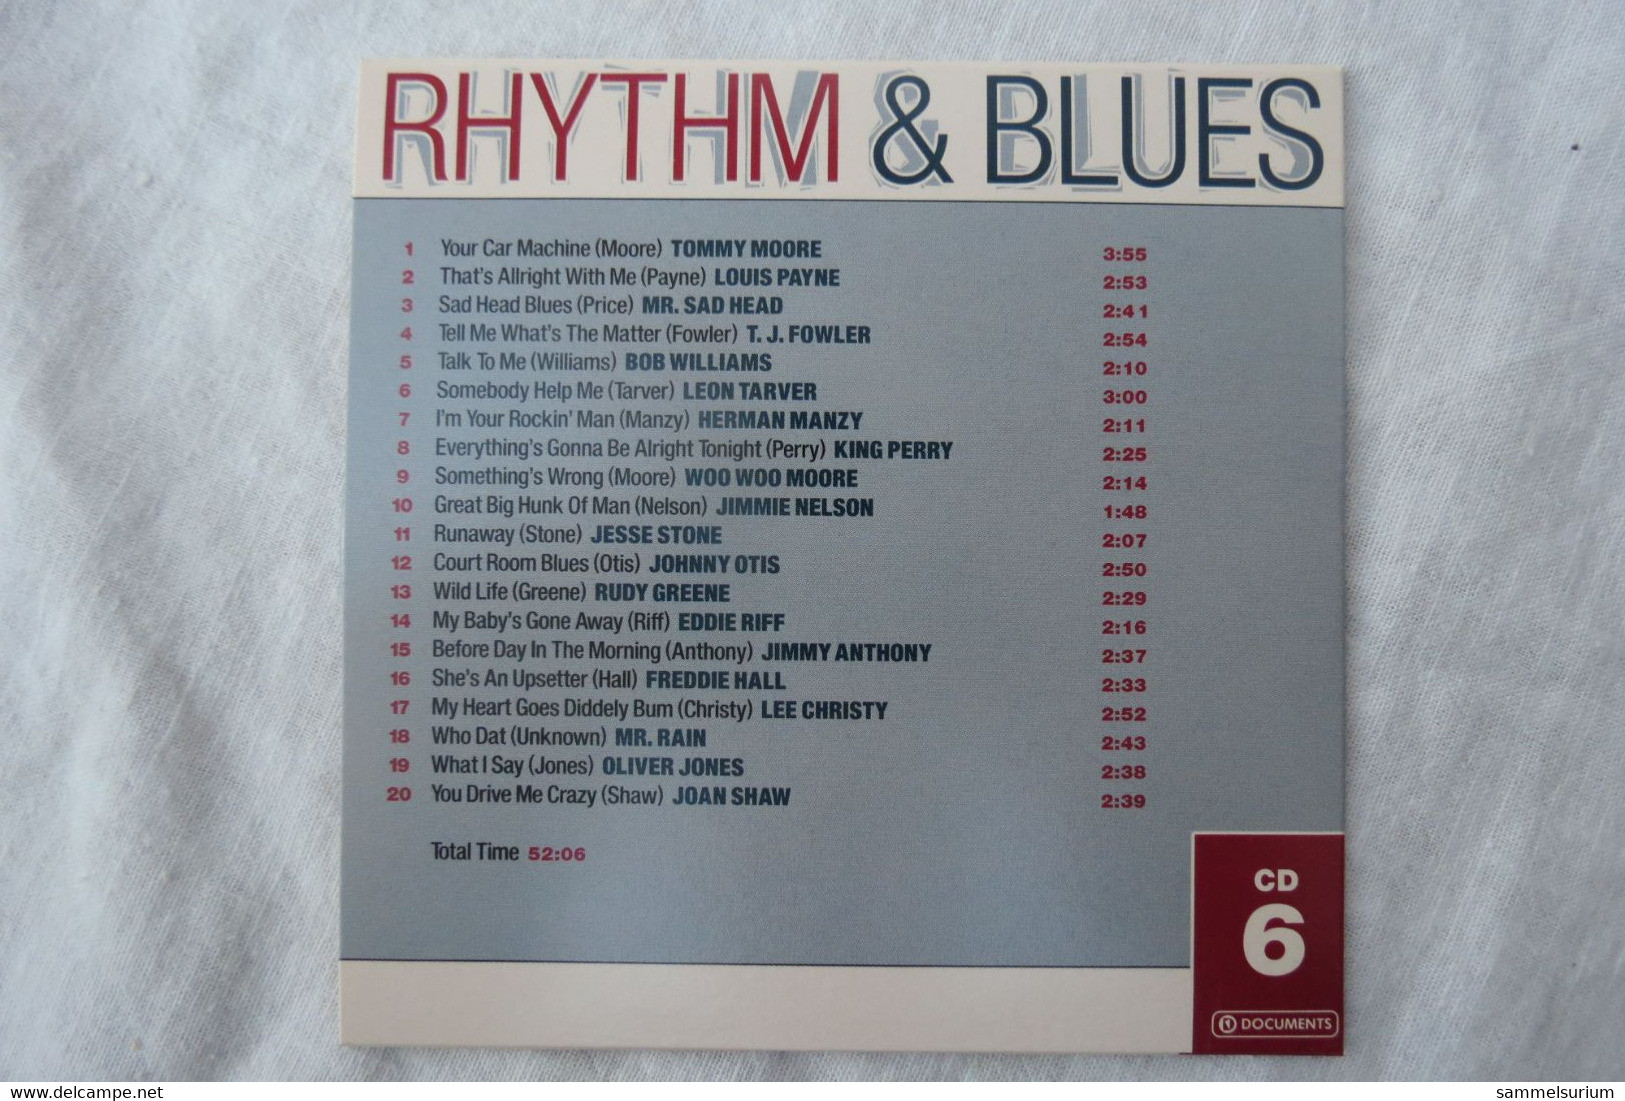 10 CDs Set "Rhythm & Blues" Original Masters